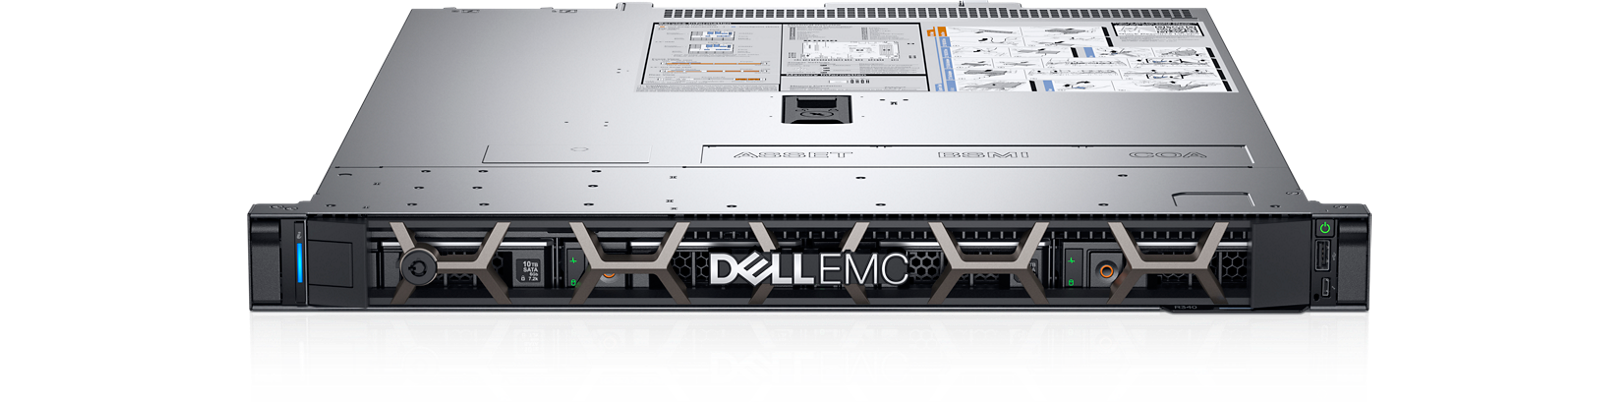 Dell R340